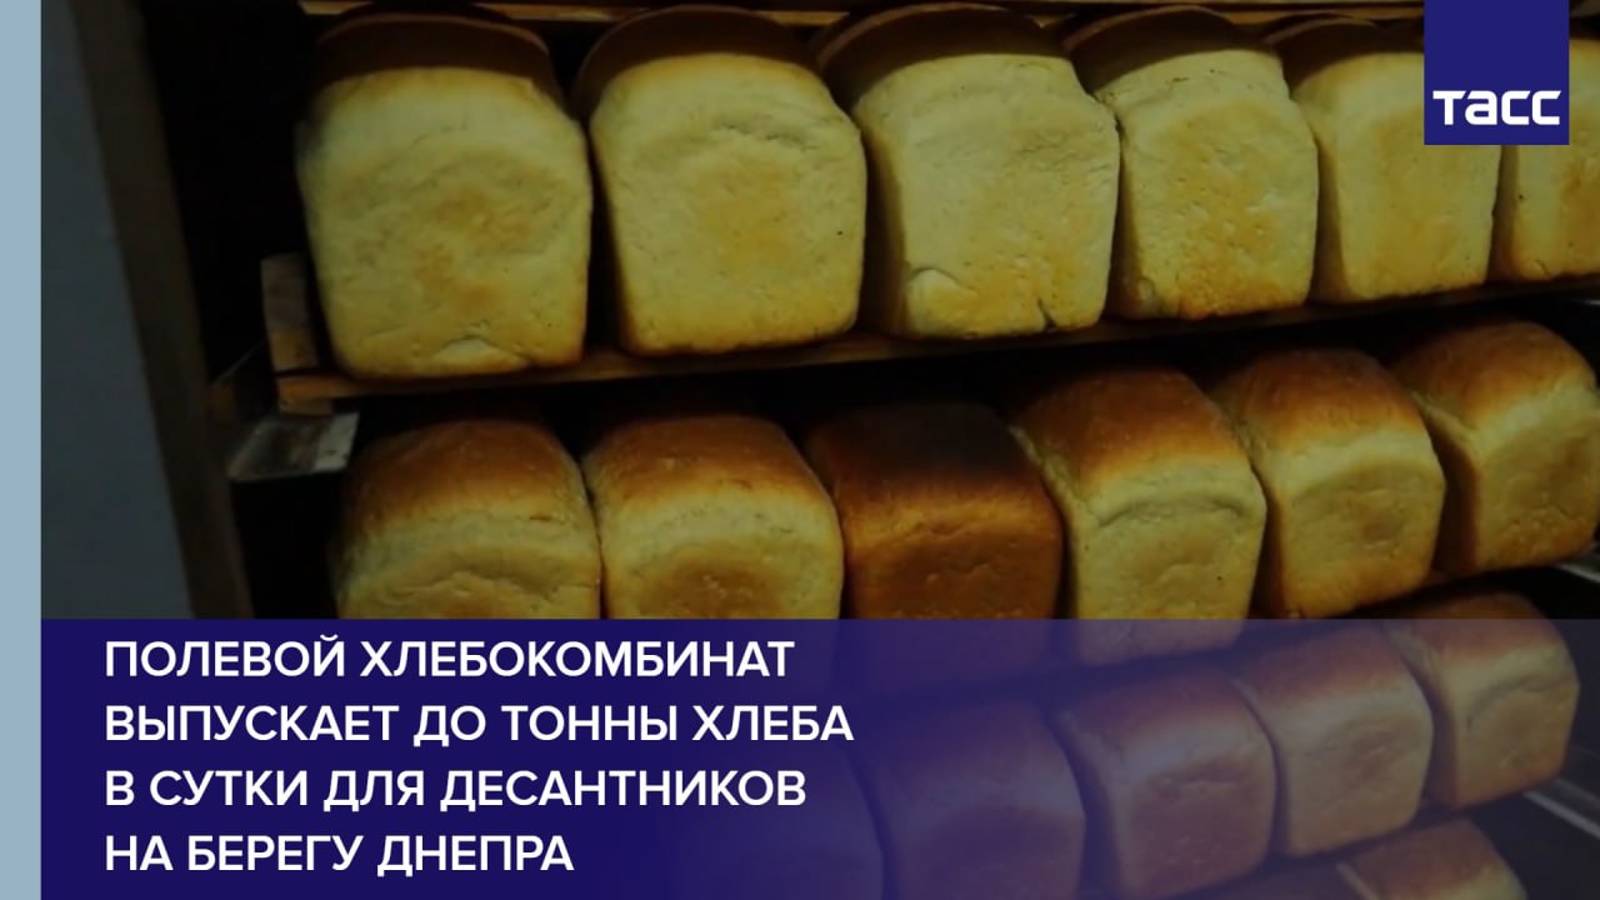 Полевой хлебокомбинат выпускает до тонны хлеба в сутки для десантников на берегу Днепра